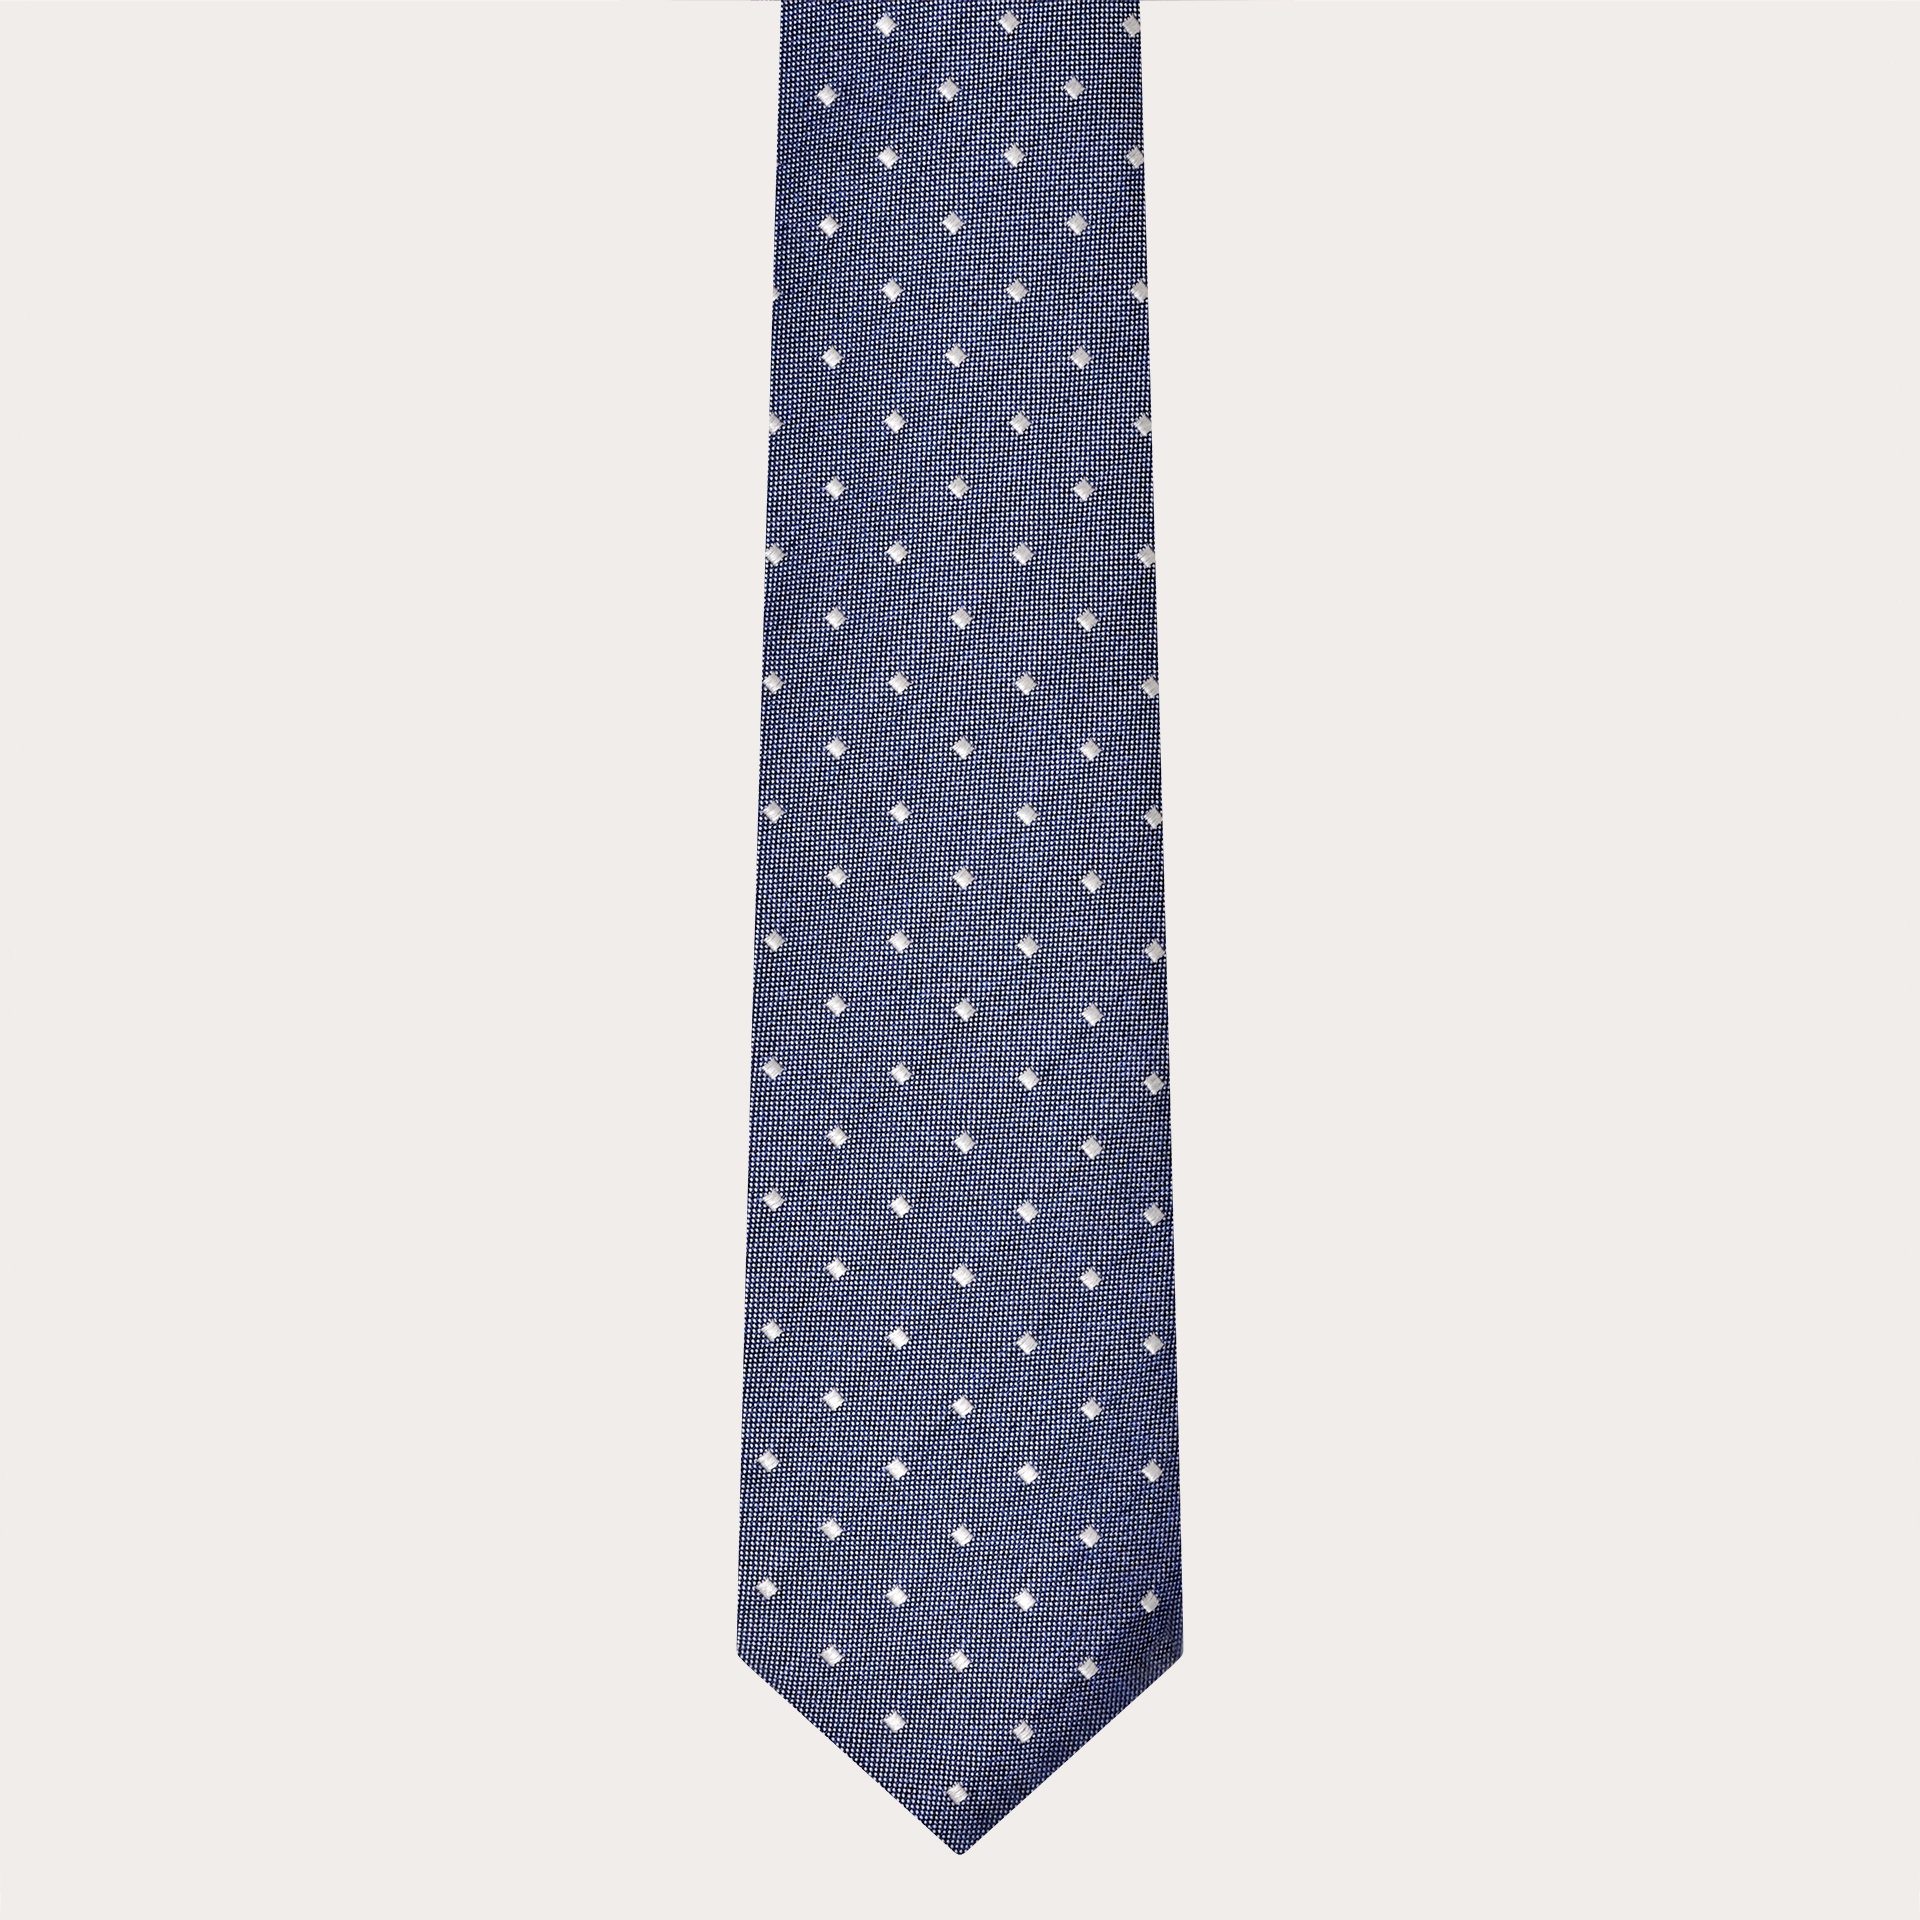 BRUCLE Cravate élégante en soie jacquard, bleu clair chiné à carreaux nacrés